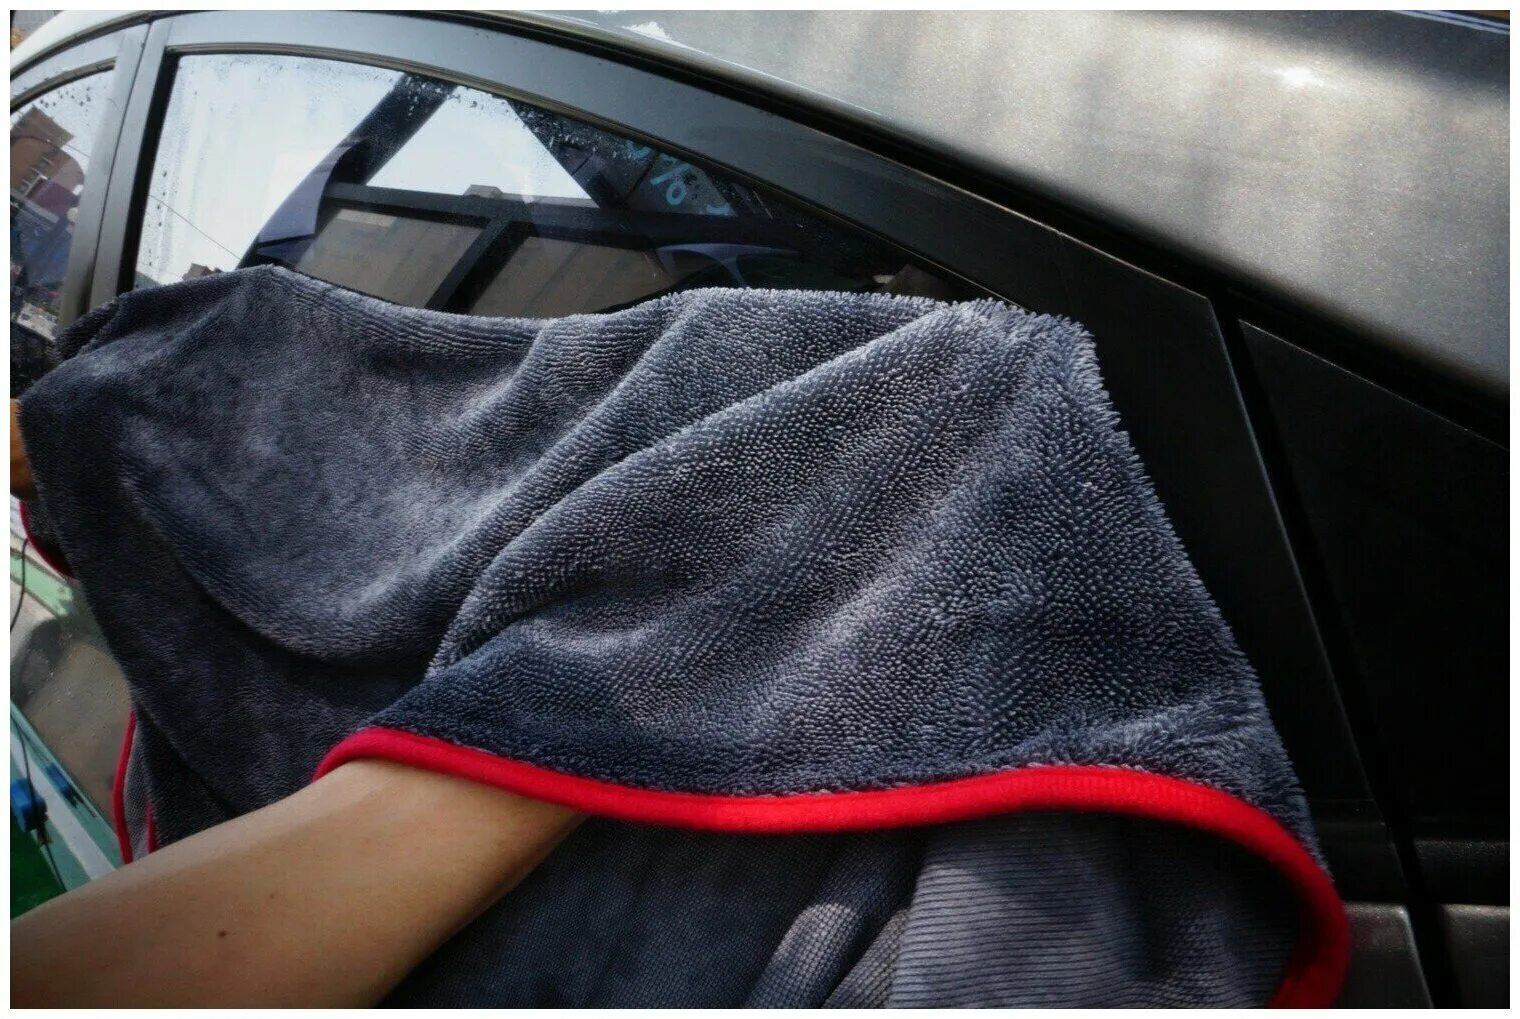 PURESTAR Twist Drying Towel, 50х60см. Микрофибровое полотенце для автомобиля. Микрофибра для автомобиля. Микрофибра для сушки автомобиля. Полотенце для сушки авто